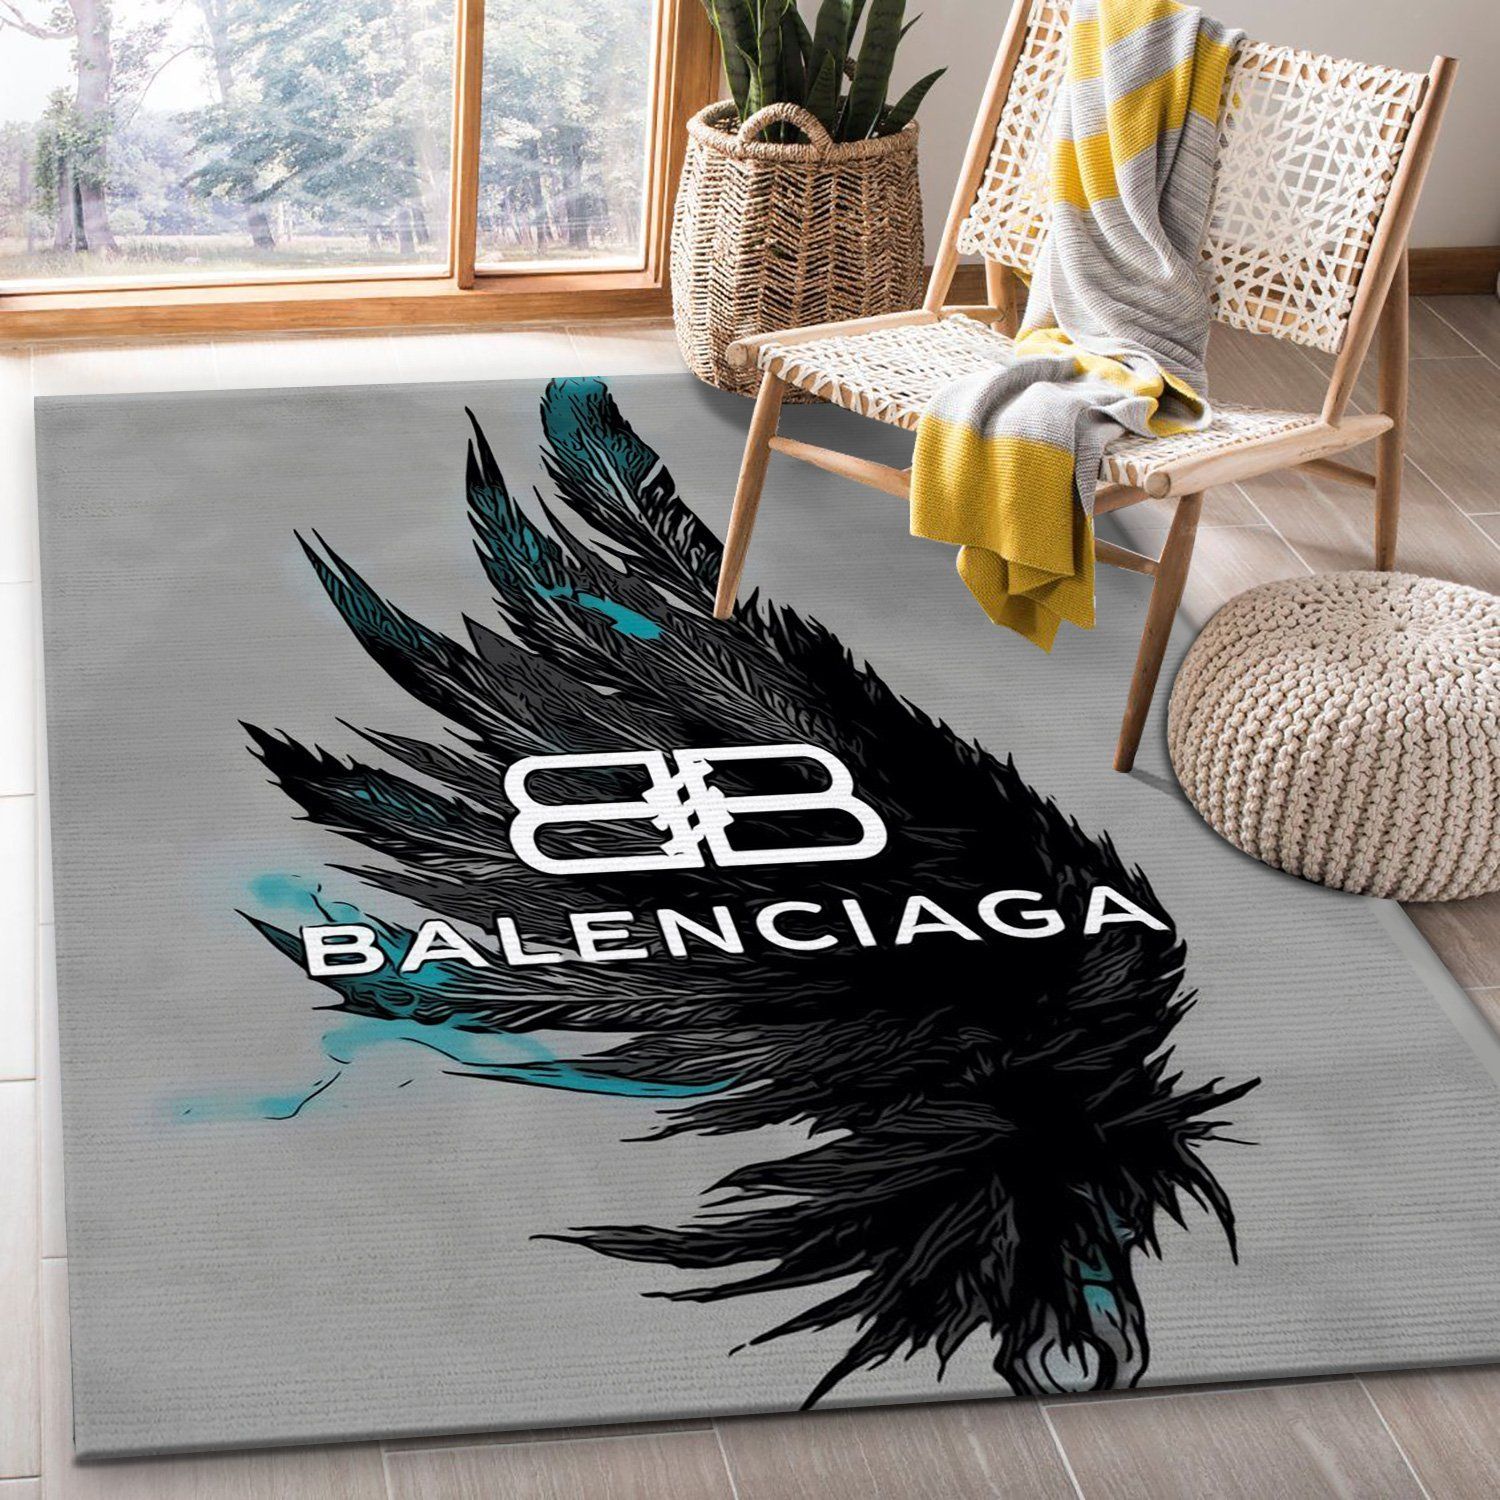 Balenciaga Rectangle Rug Door Mat Area Carpet Luxury Fashion Brand Home Decor